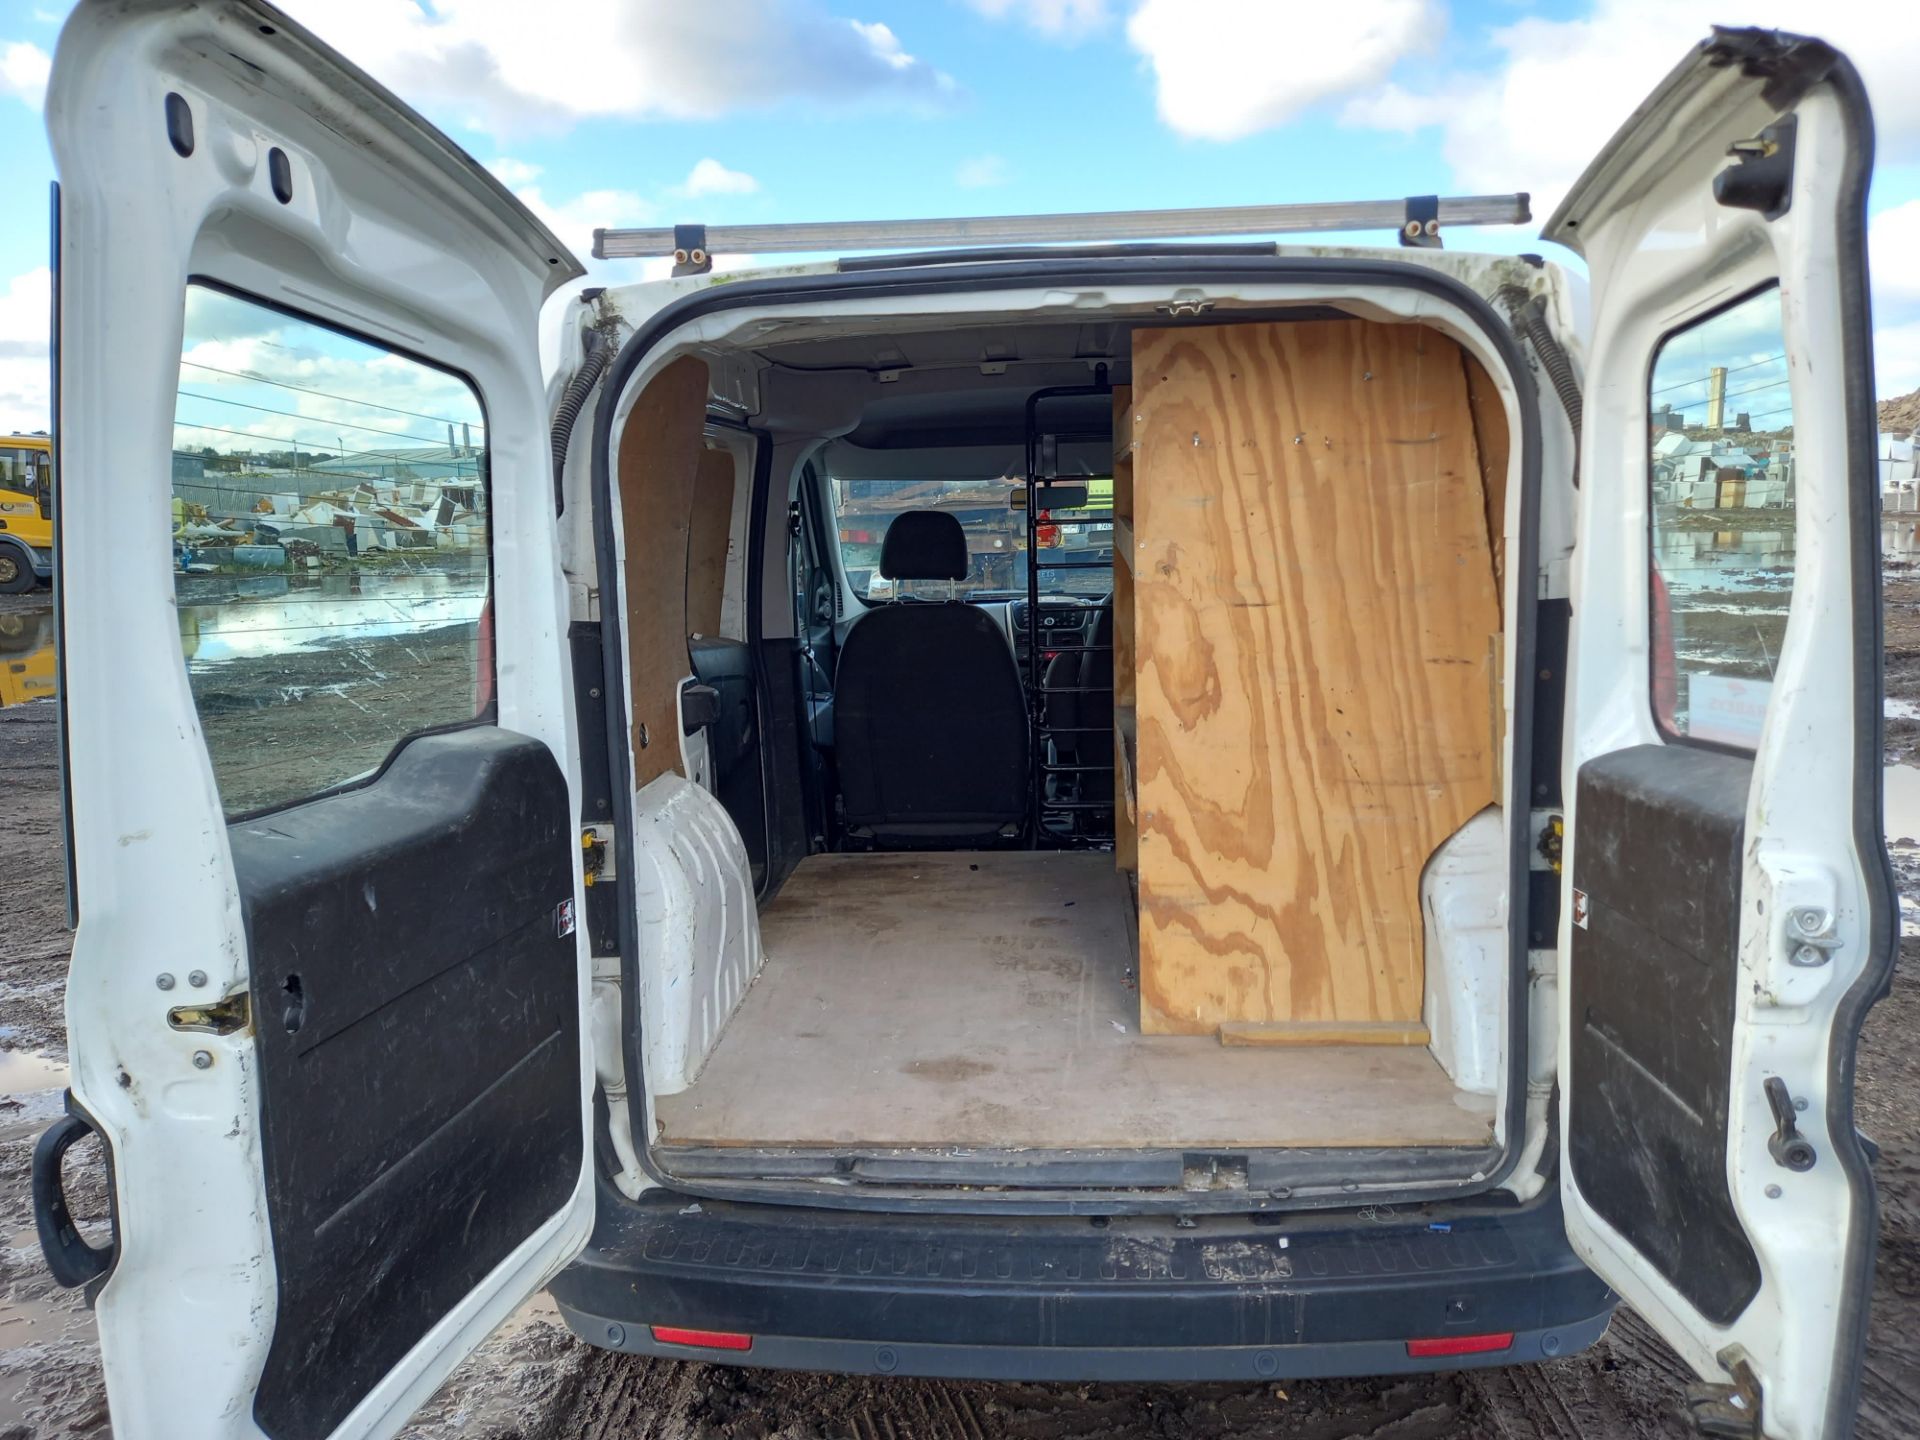 2014 Fiat Doblo MJET SX Diesel Panel Van. - Image 5 of 8